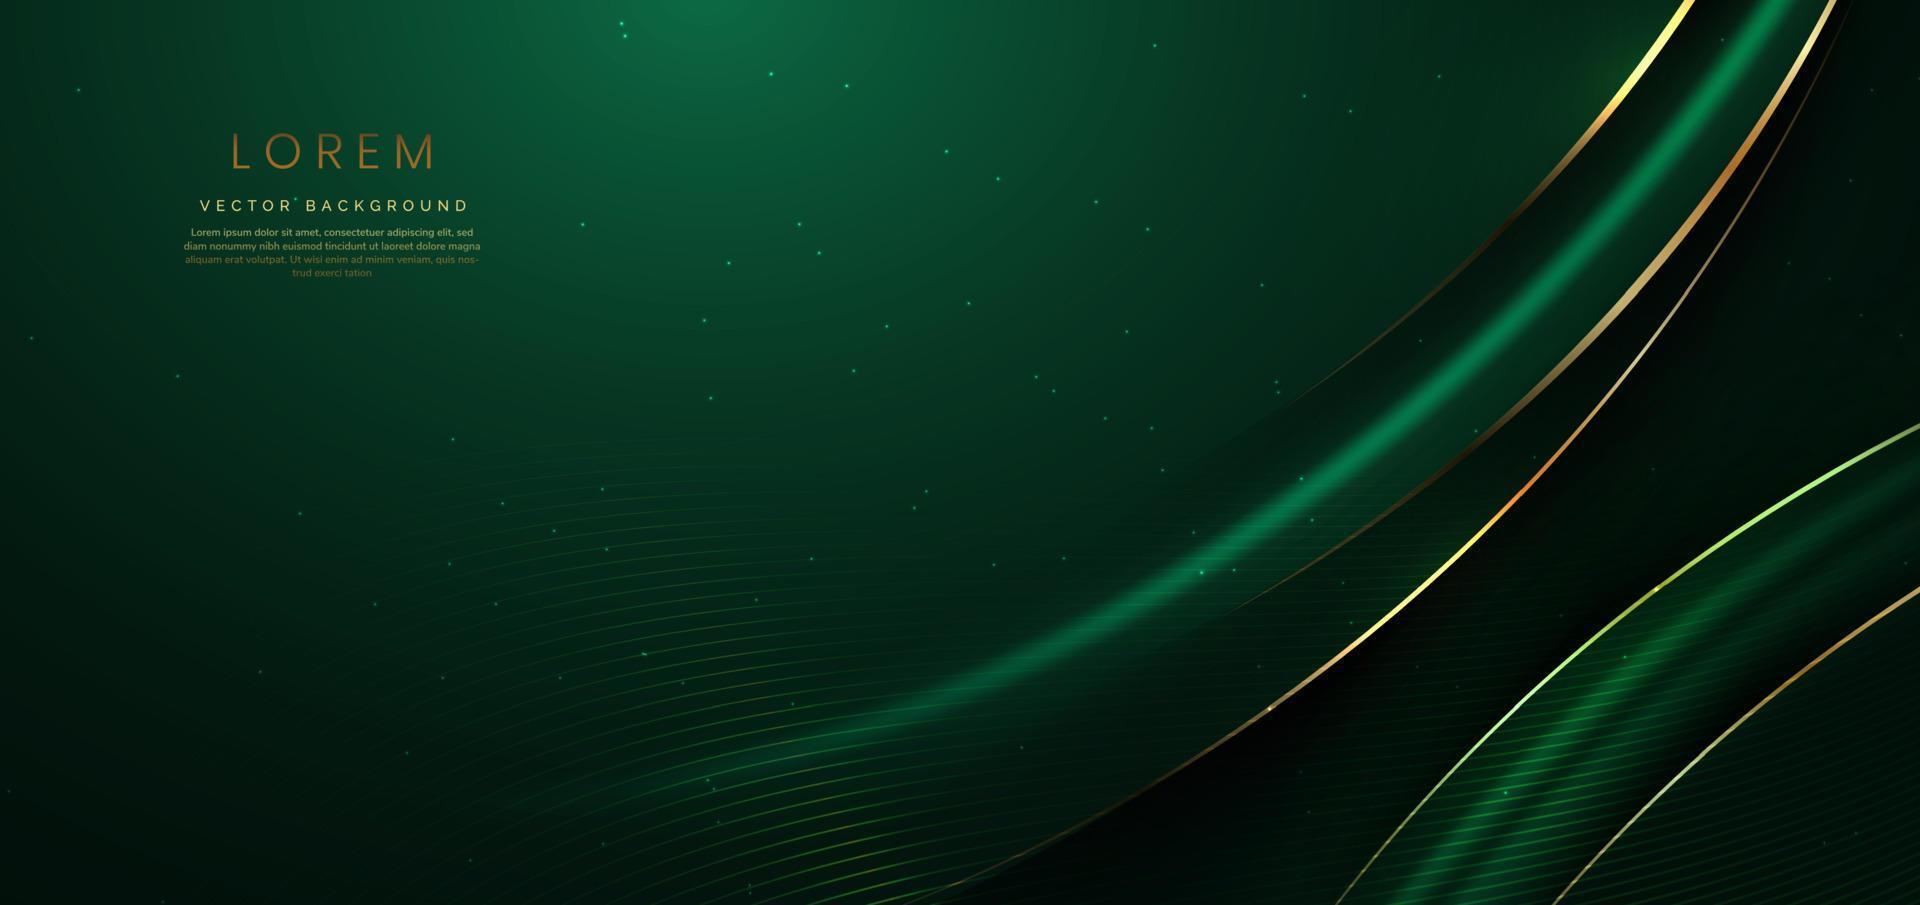 cinta verde curva de oro 3d abstracta sobre fondo verde oscuro con efecto de iluminación y brillo con espacio de copia para texto. vector